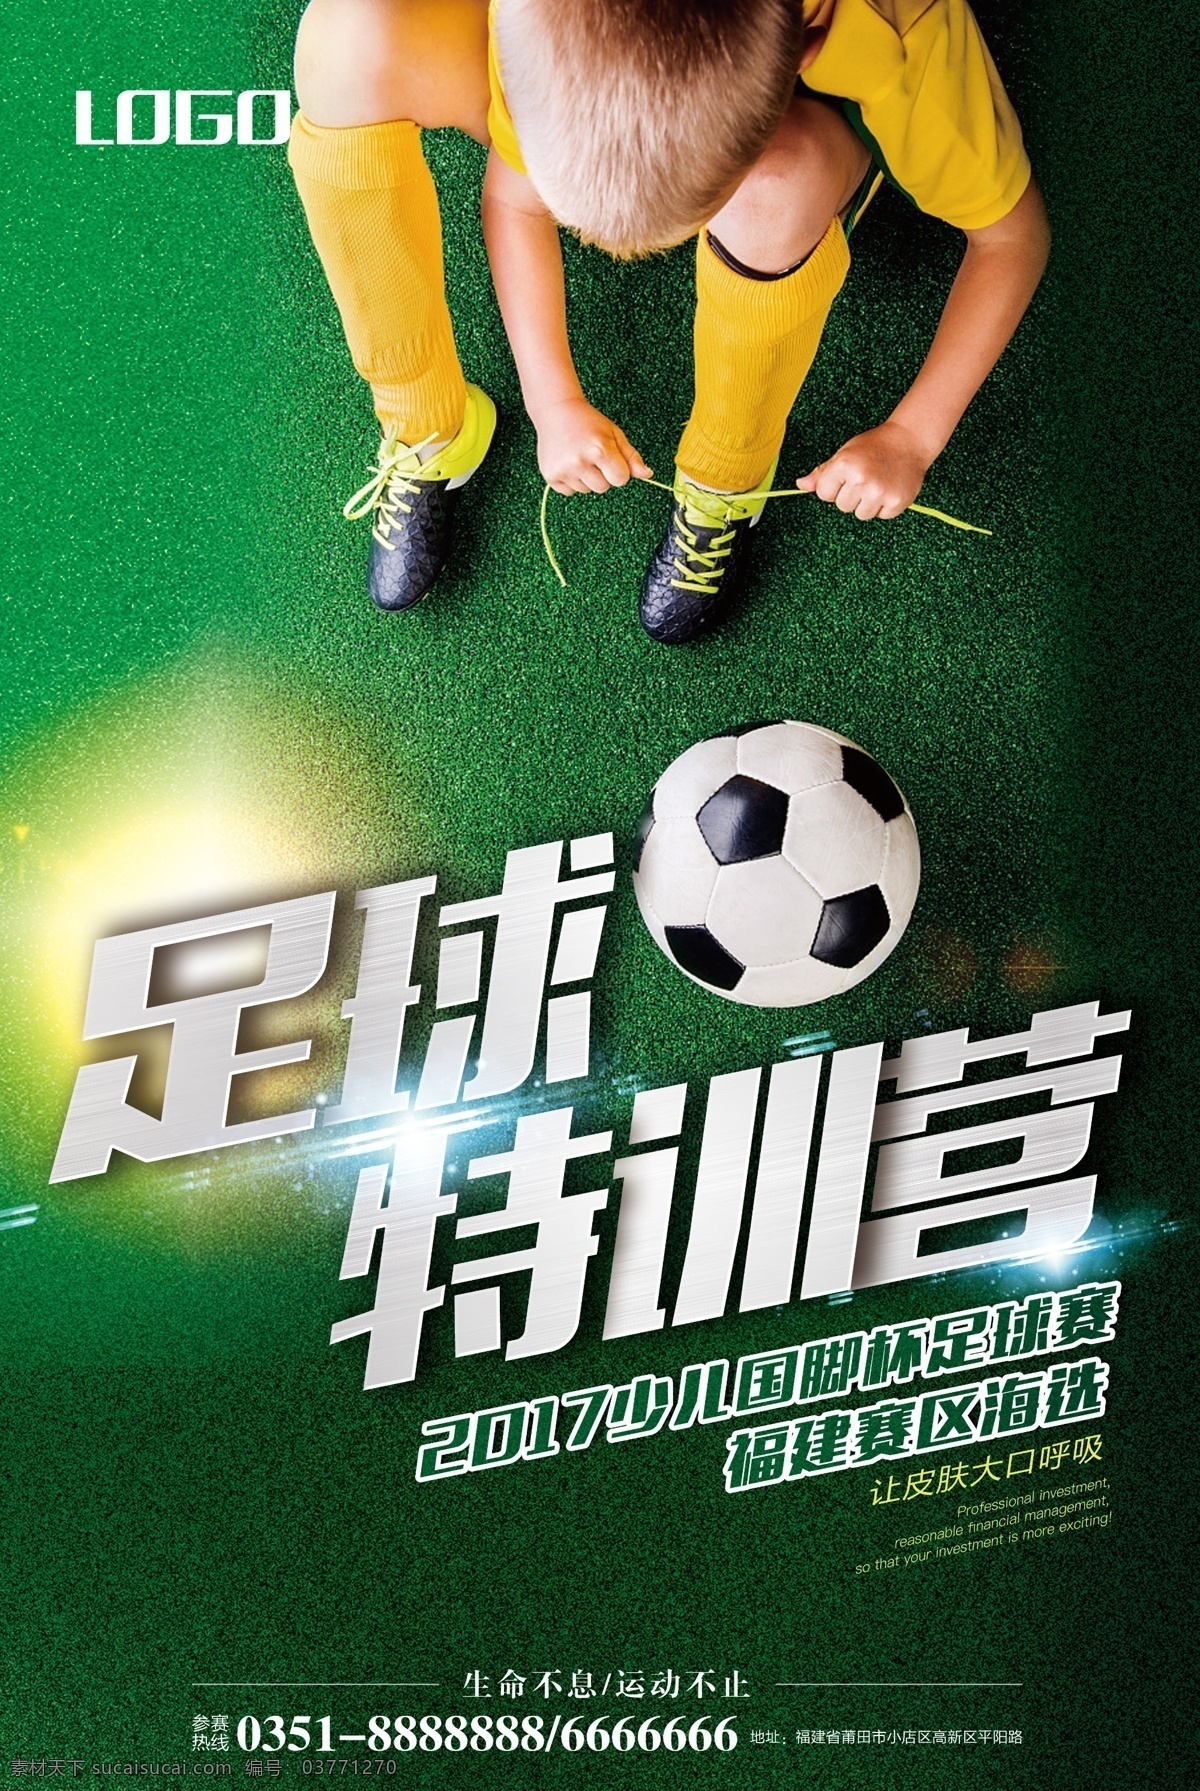 足球海报 足球 海报 广告 球赛 校园 足球服